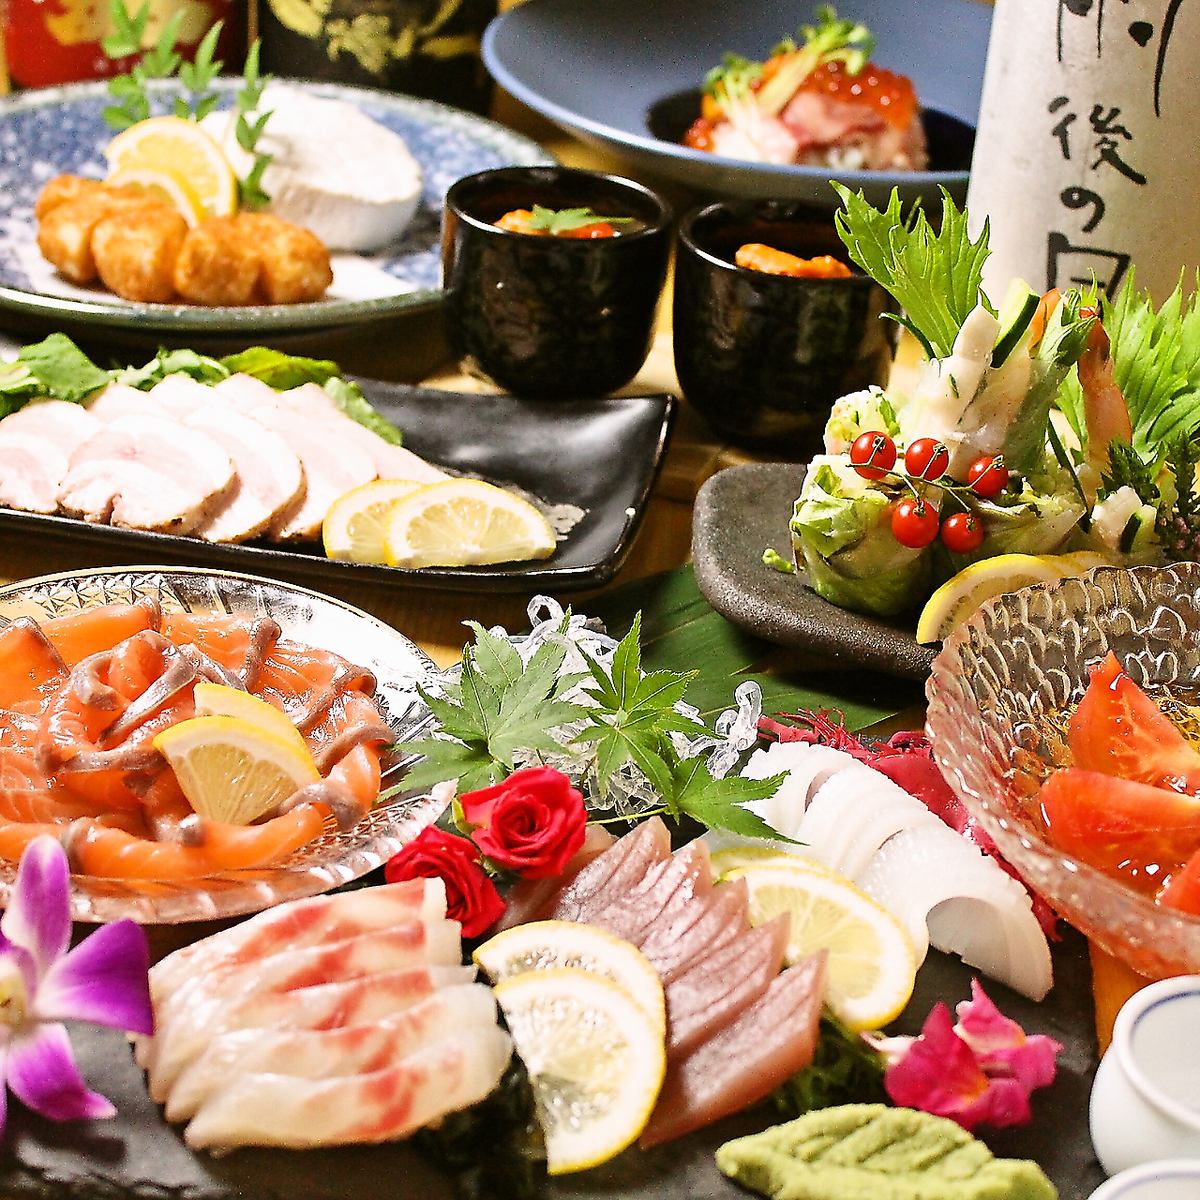 在輕鬆的日式空間中享用從北海道到沖繩精心挑選的食材以及以當地酒為主的各種清酒。